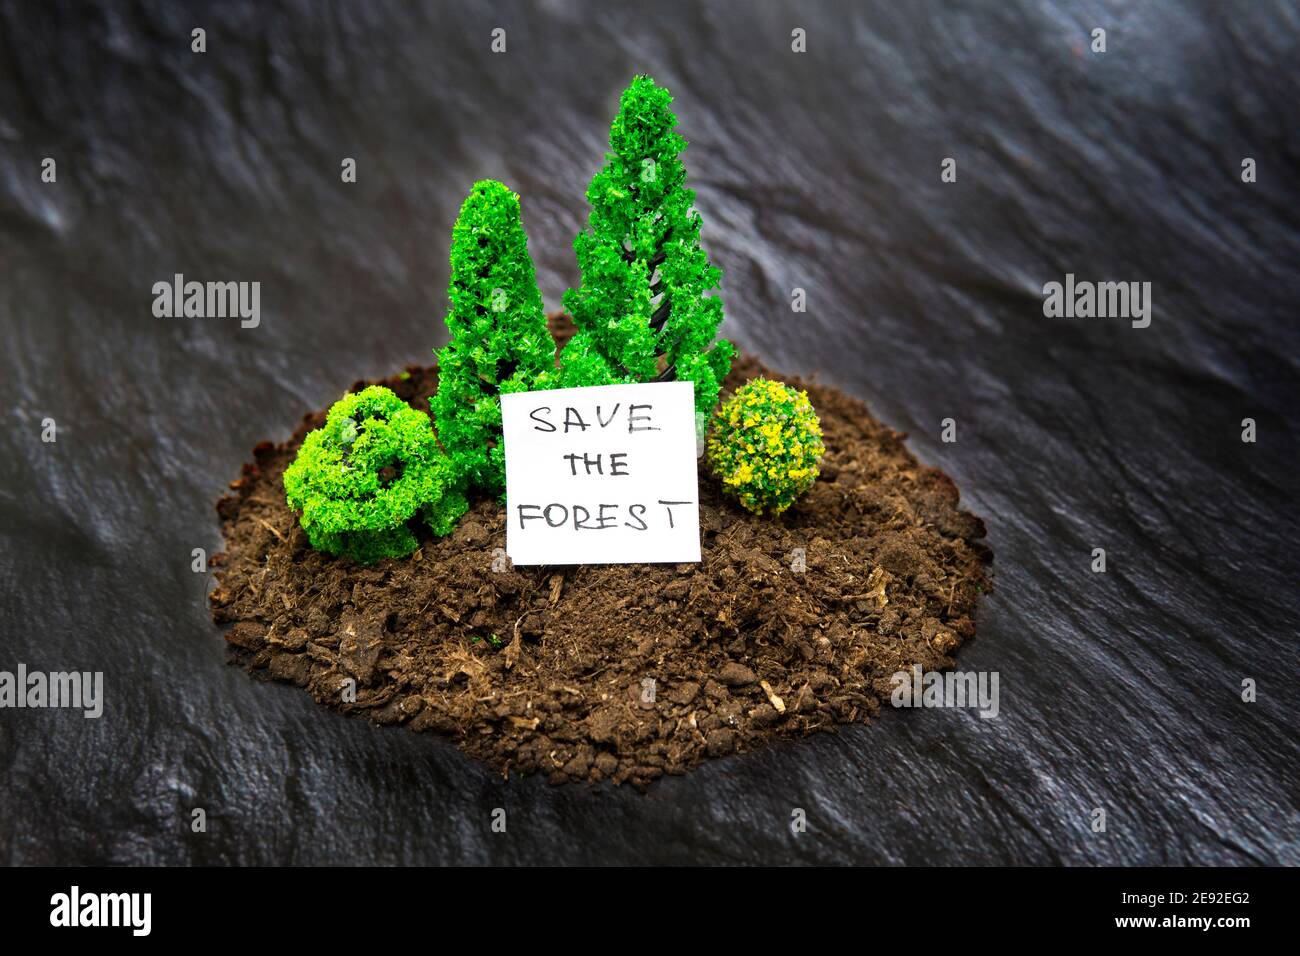 Composición de bosque de juguete en miniatura hecha de algunos árboles de suelo y de juguete sobre fondo de textura negra imitación tierra quemada. Concepto de parada de incendios forestales. Foto de stock